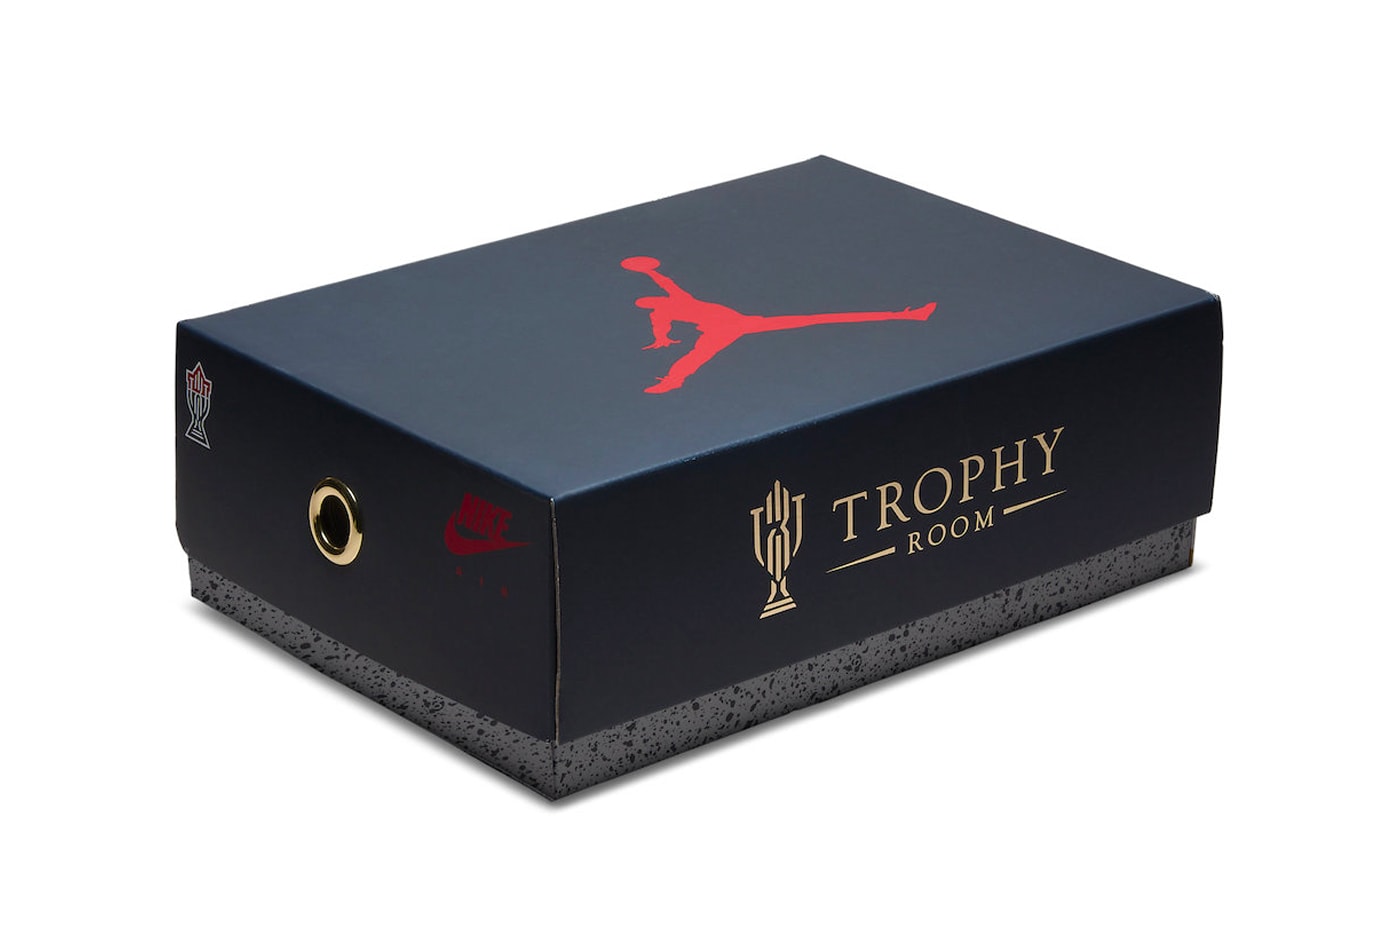 率先近賞 Trophy Room x Air Jordan 7 聯乘鞋款官方圖輯